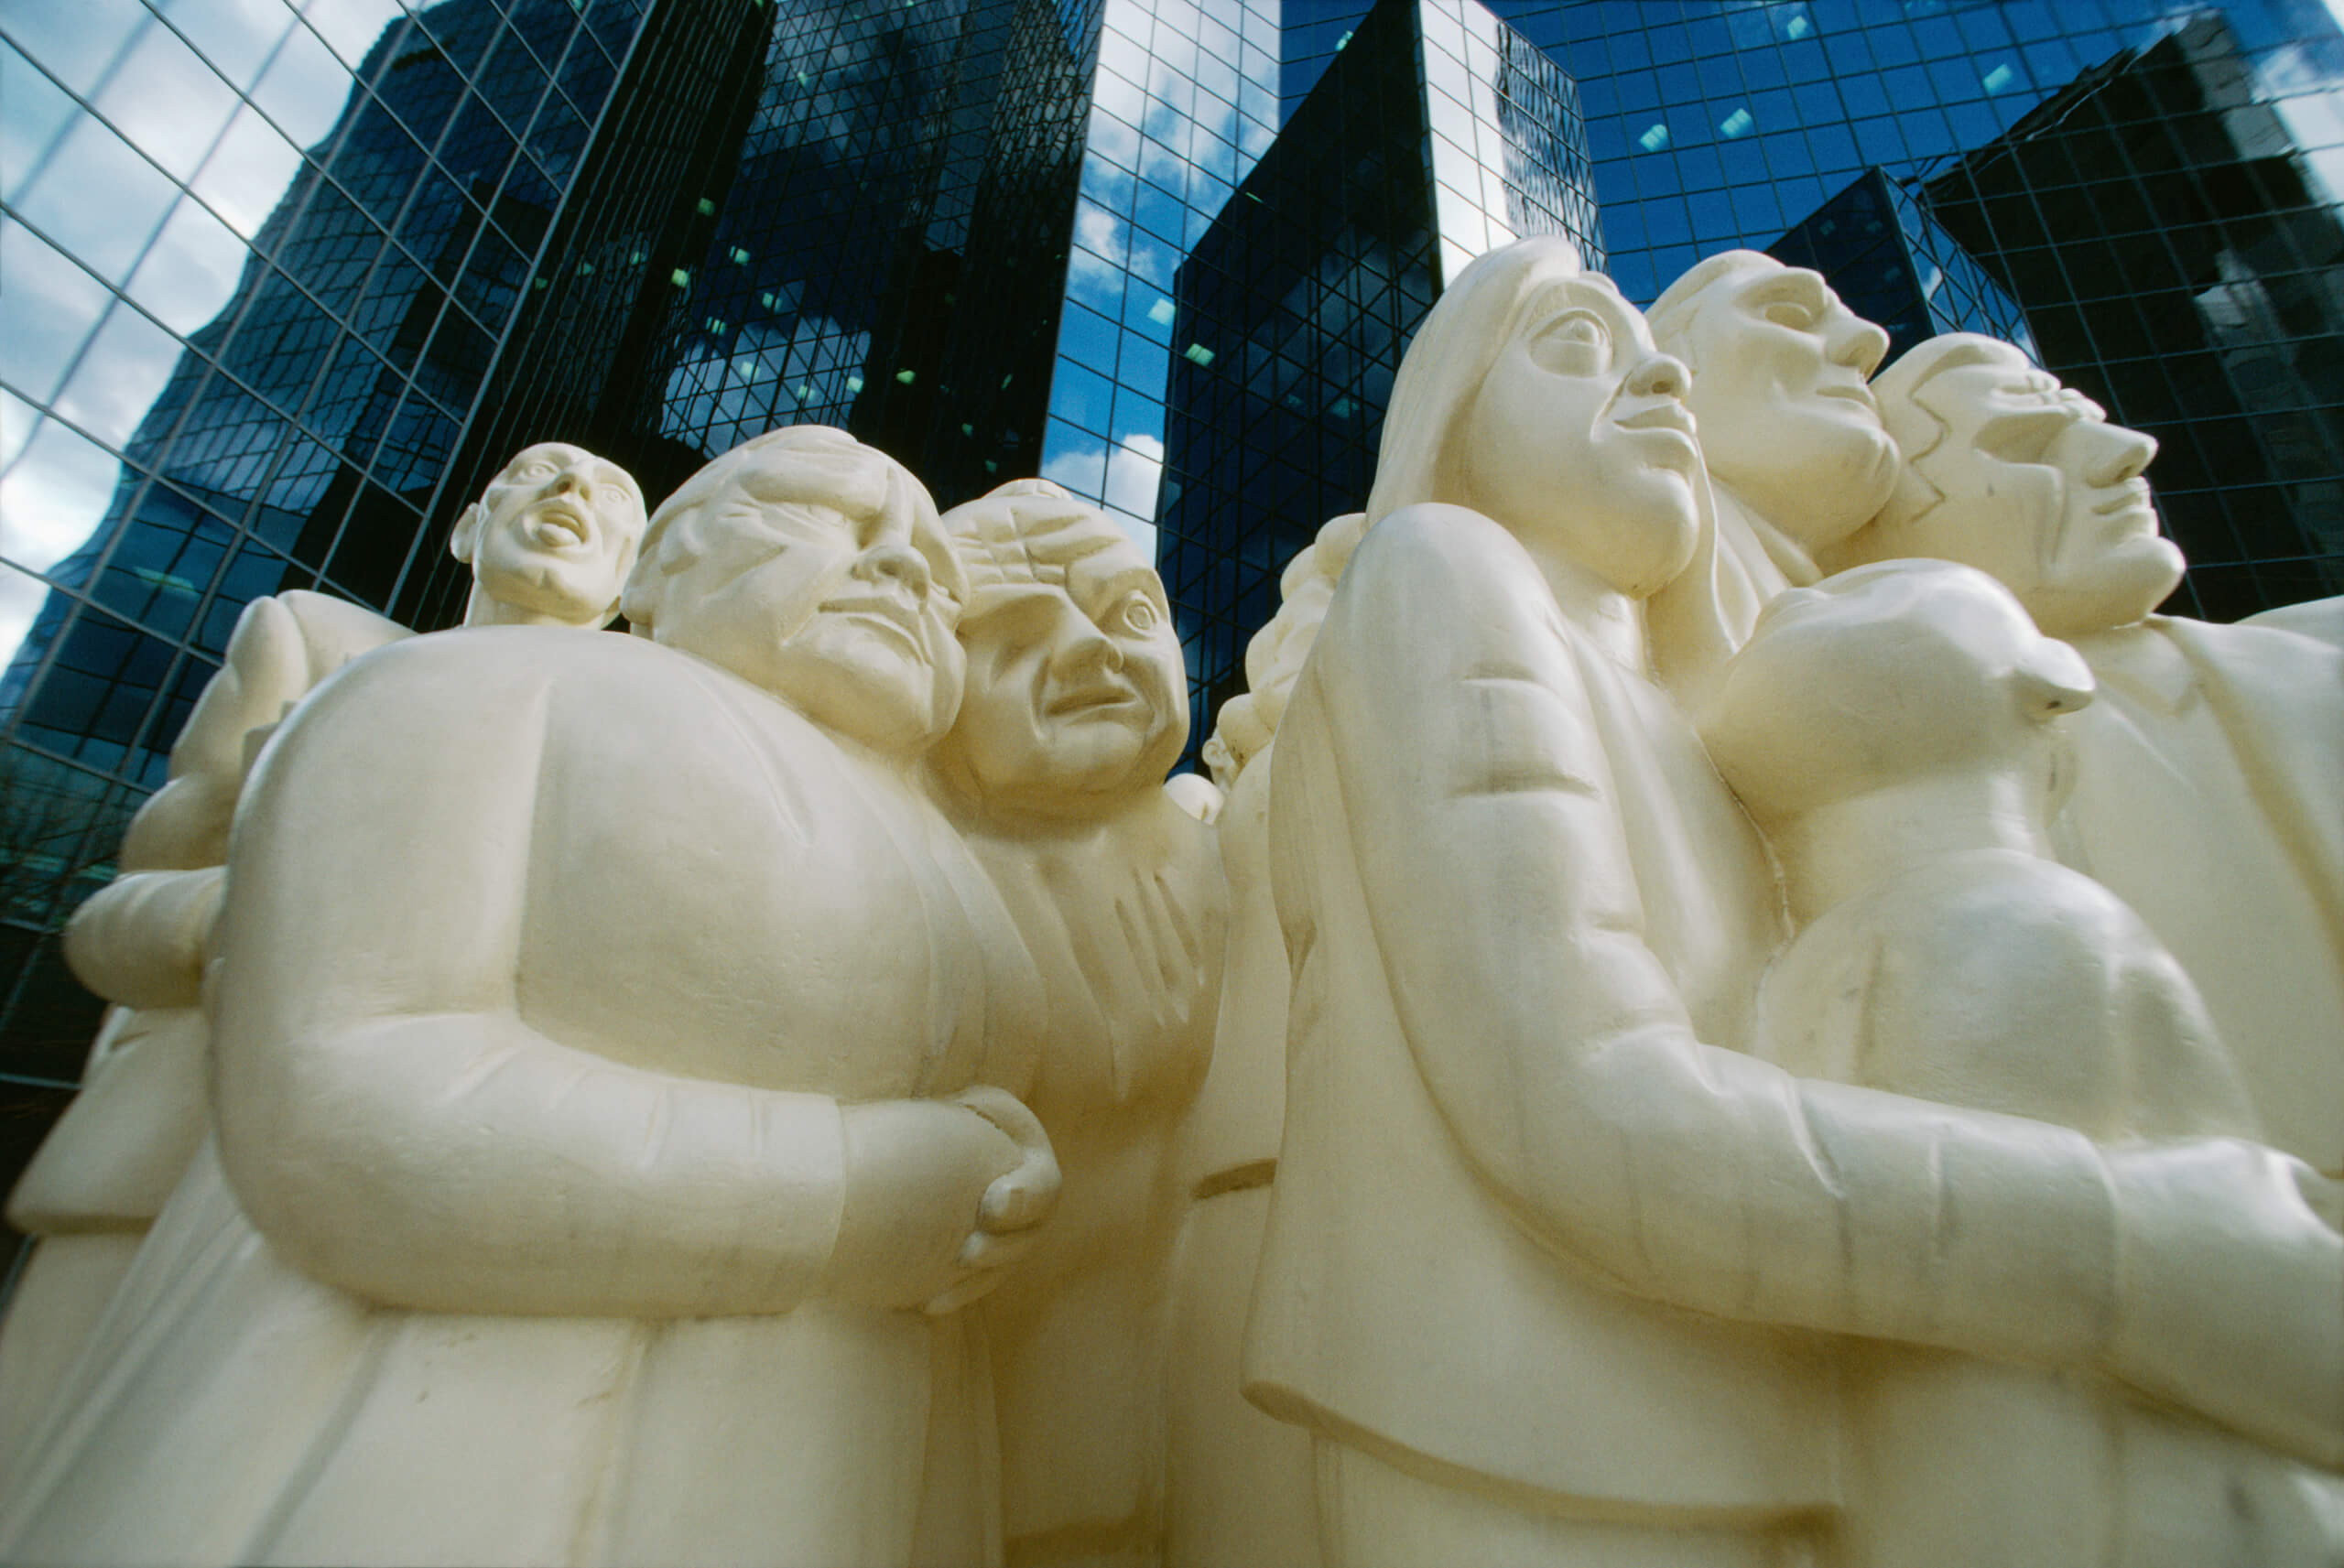 La sculpture La foule illuminée de Raymond Mason, une œuvre d’art publique située sur l’esplanade du 1981, McGill College, à Montréal, symbolise la fragilité de l’espèce humaine.